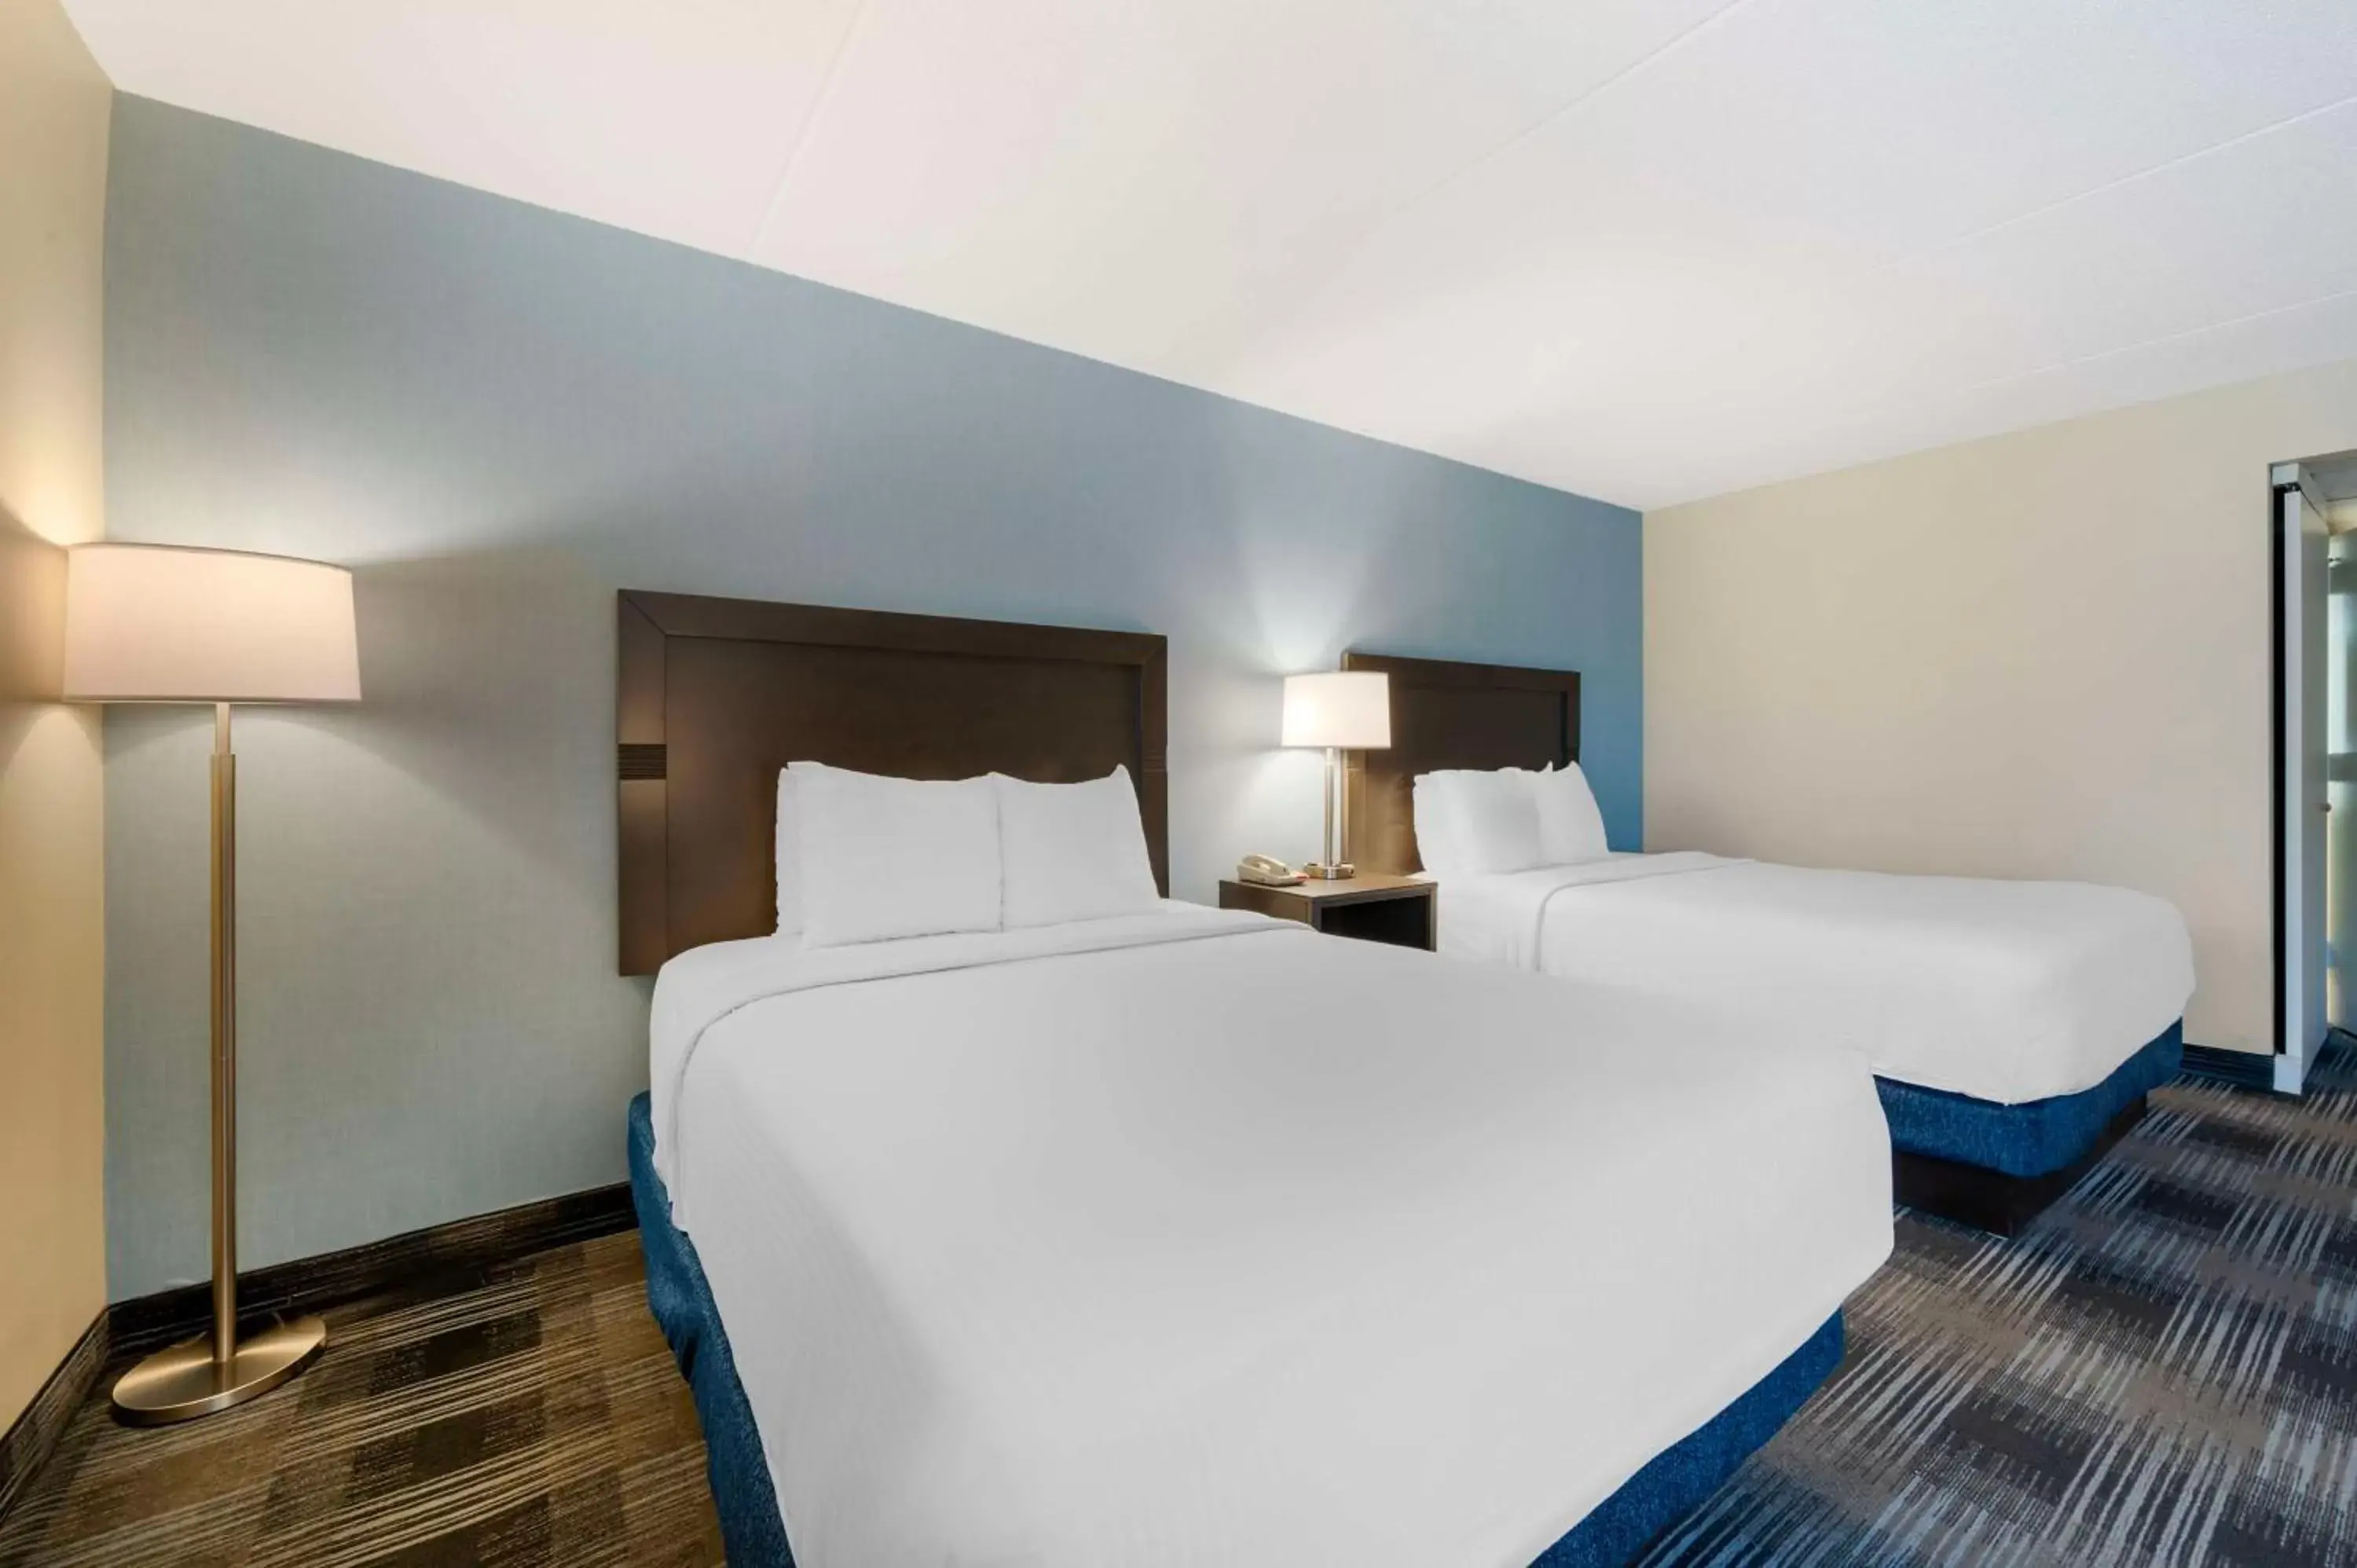 Bedroom, Bed in Best Western Plus Mount Vernon - Fort Belvoir